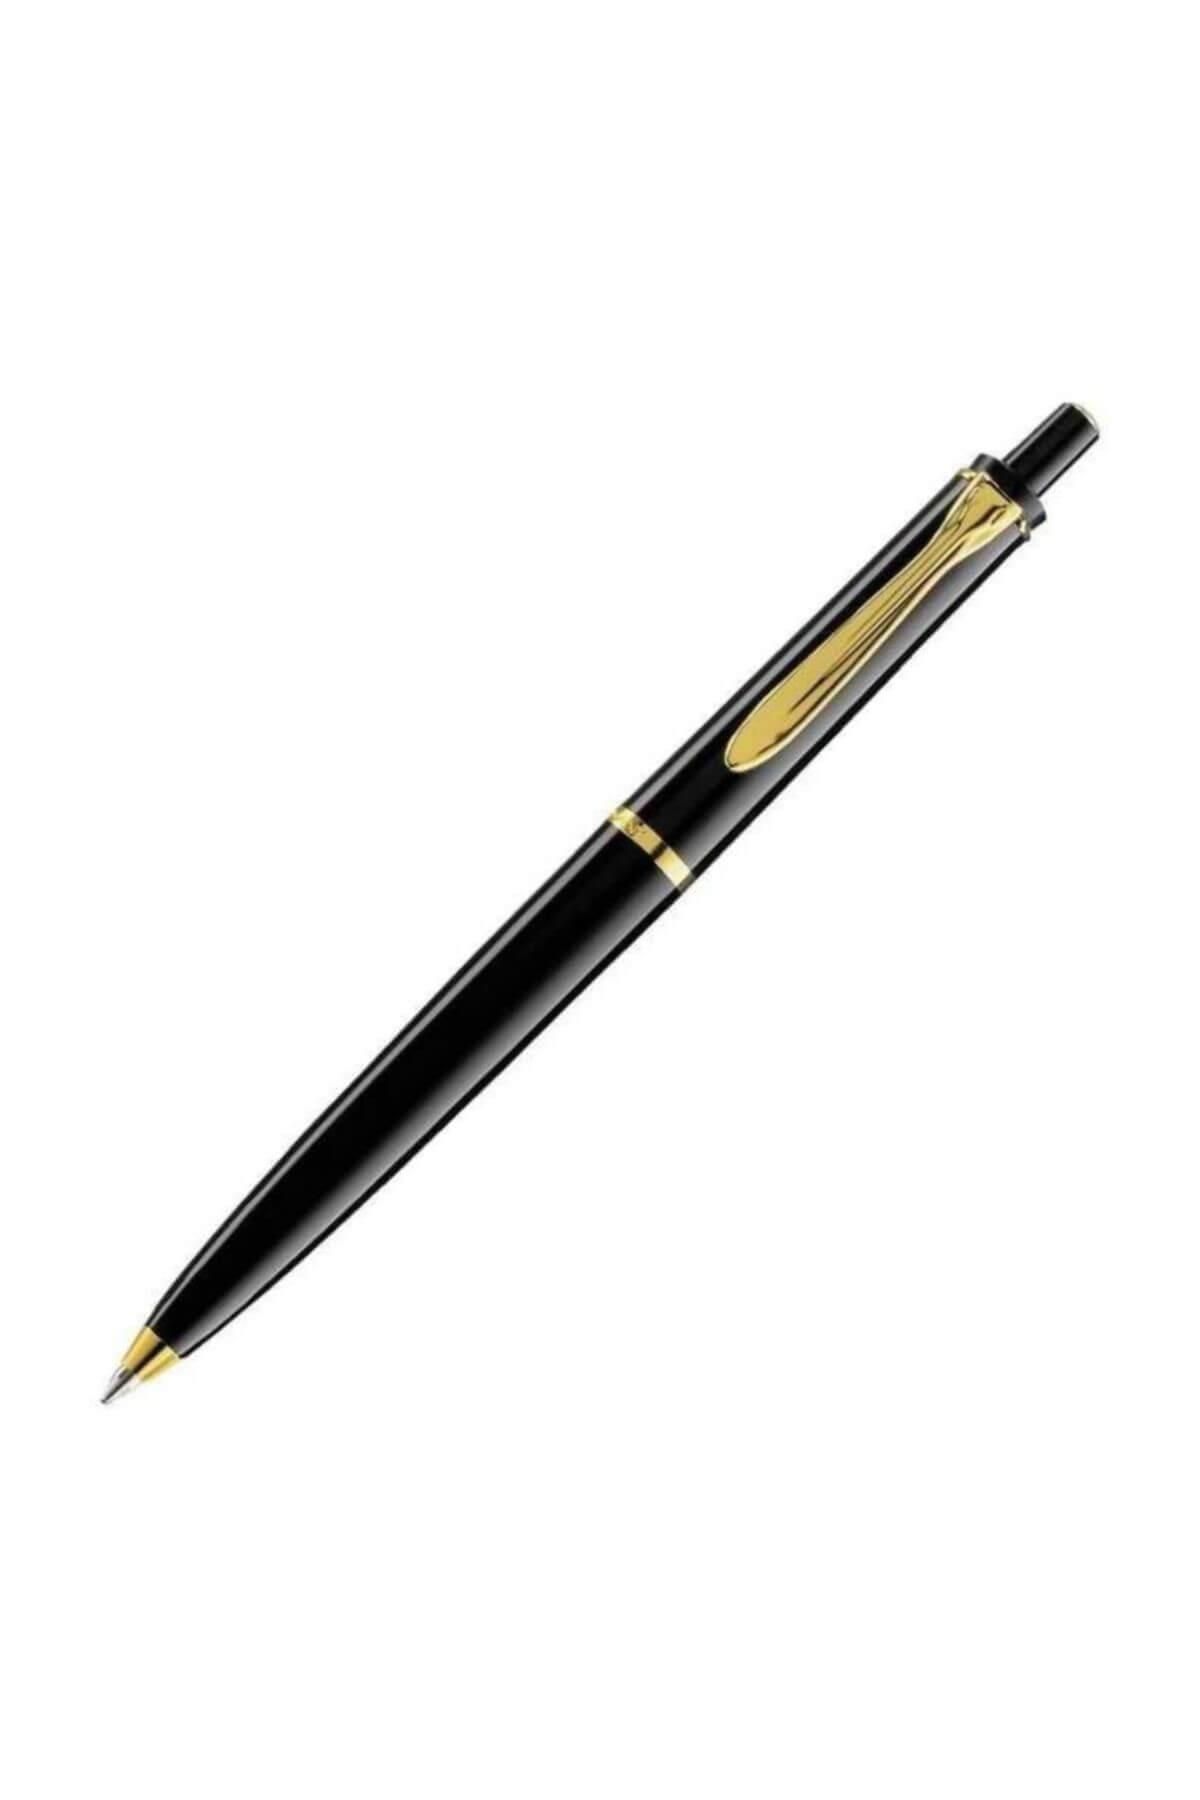 Pelikan Tükenmez Kalem 14 Ayar Altın Kaplama Siyah K200